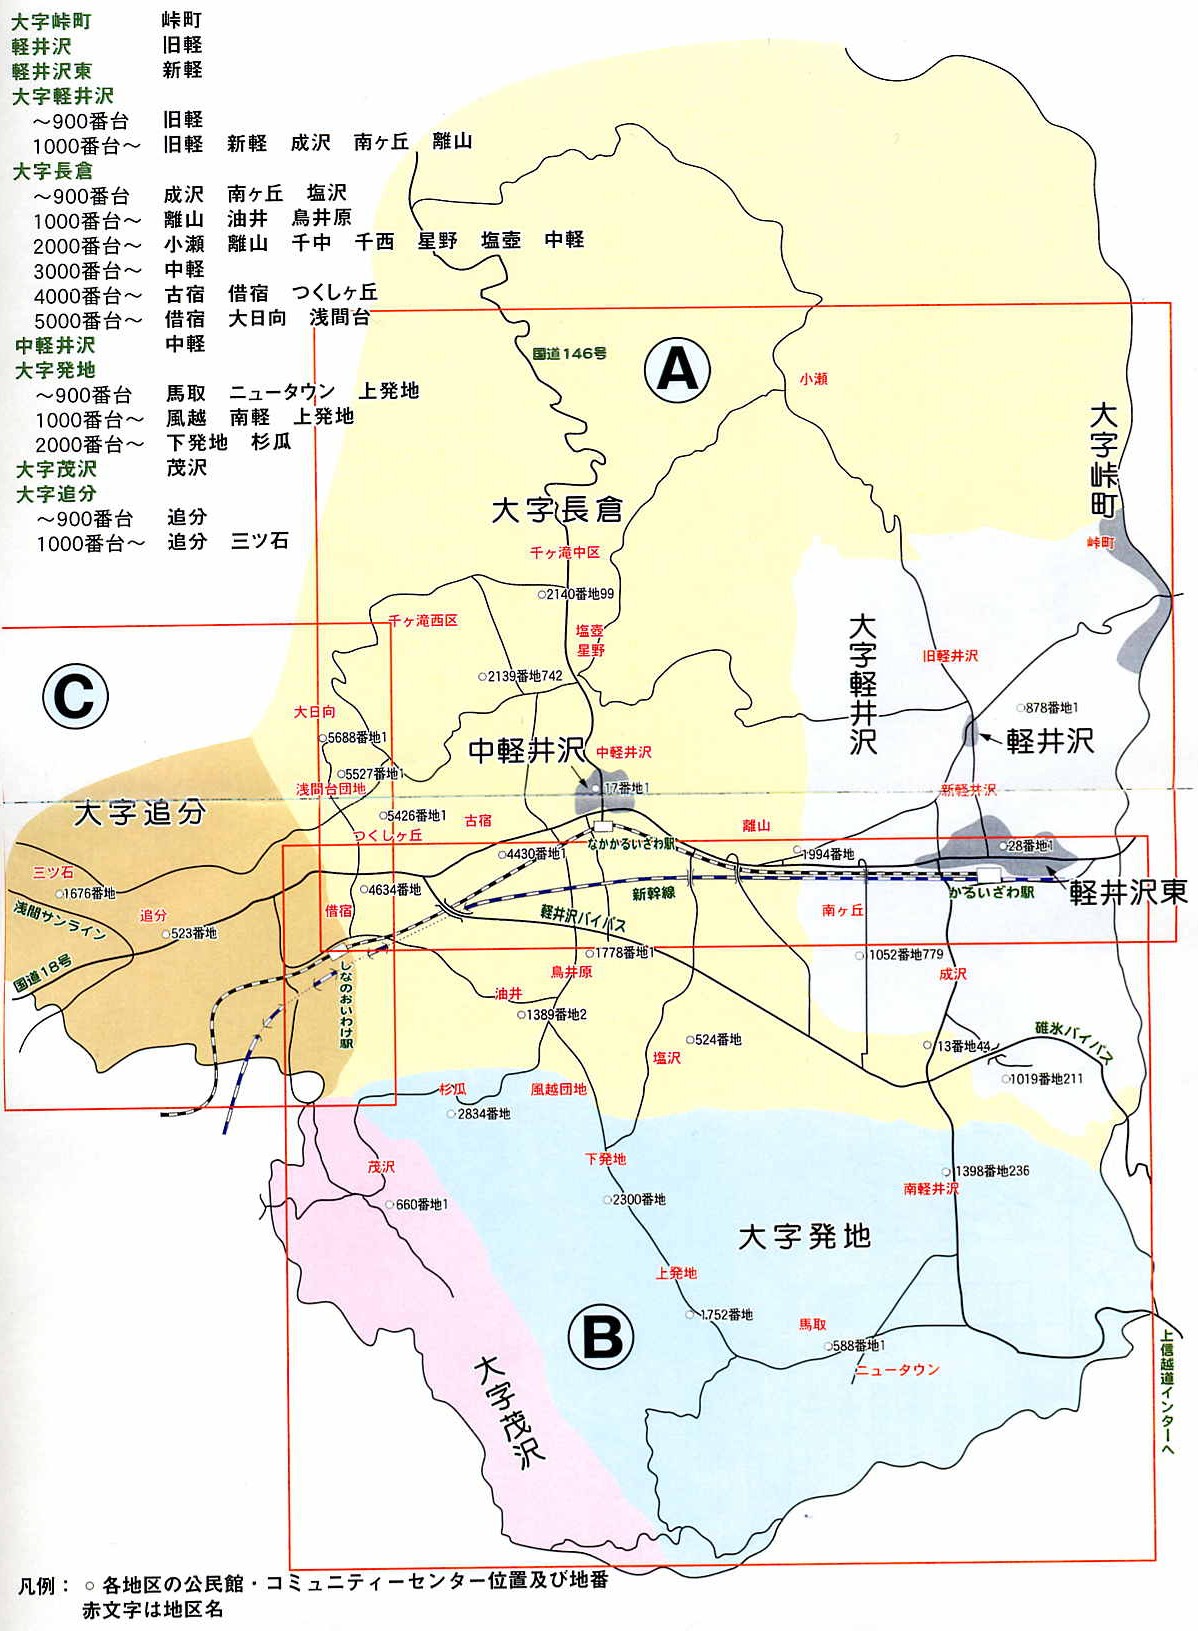 軽井沢町の住所地番の概略図